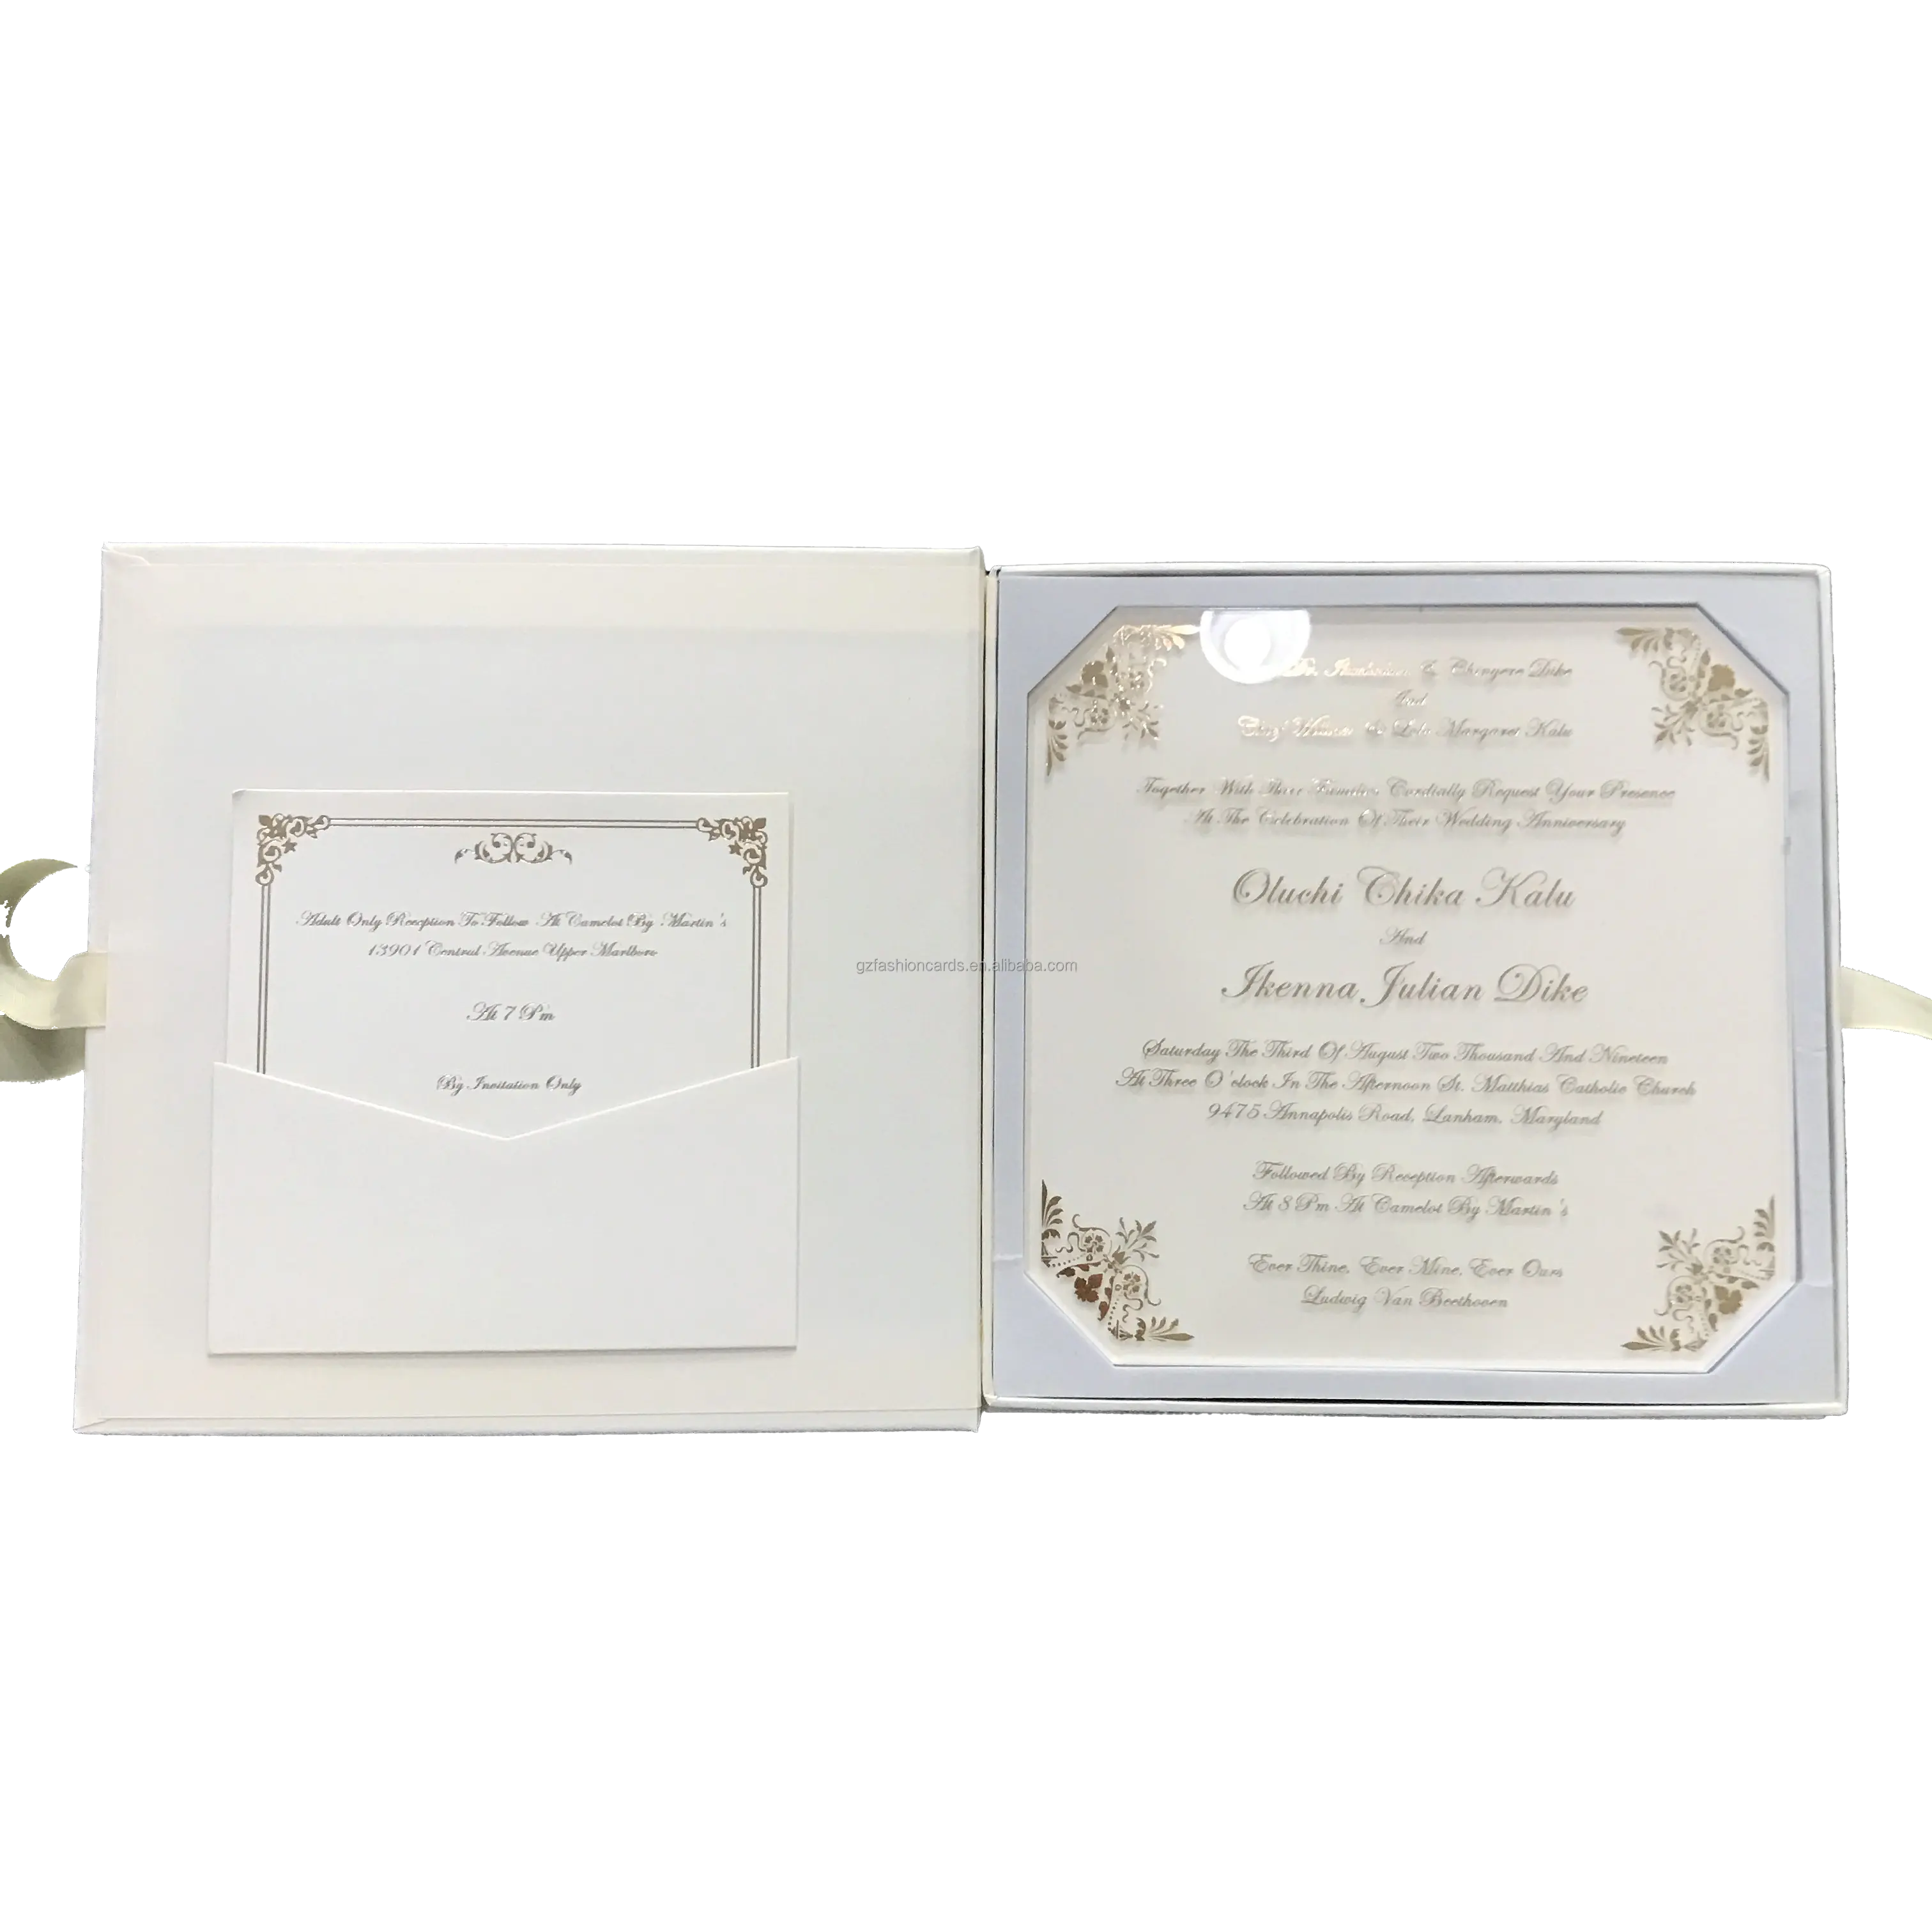 Premium Casamento Convites Caixa Cartão Nupcial Dama De Noiva Groomsmen Proposta Casamento Bem-vindo Box com EVA